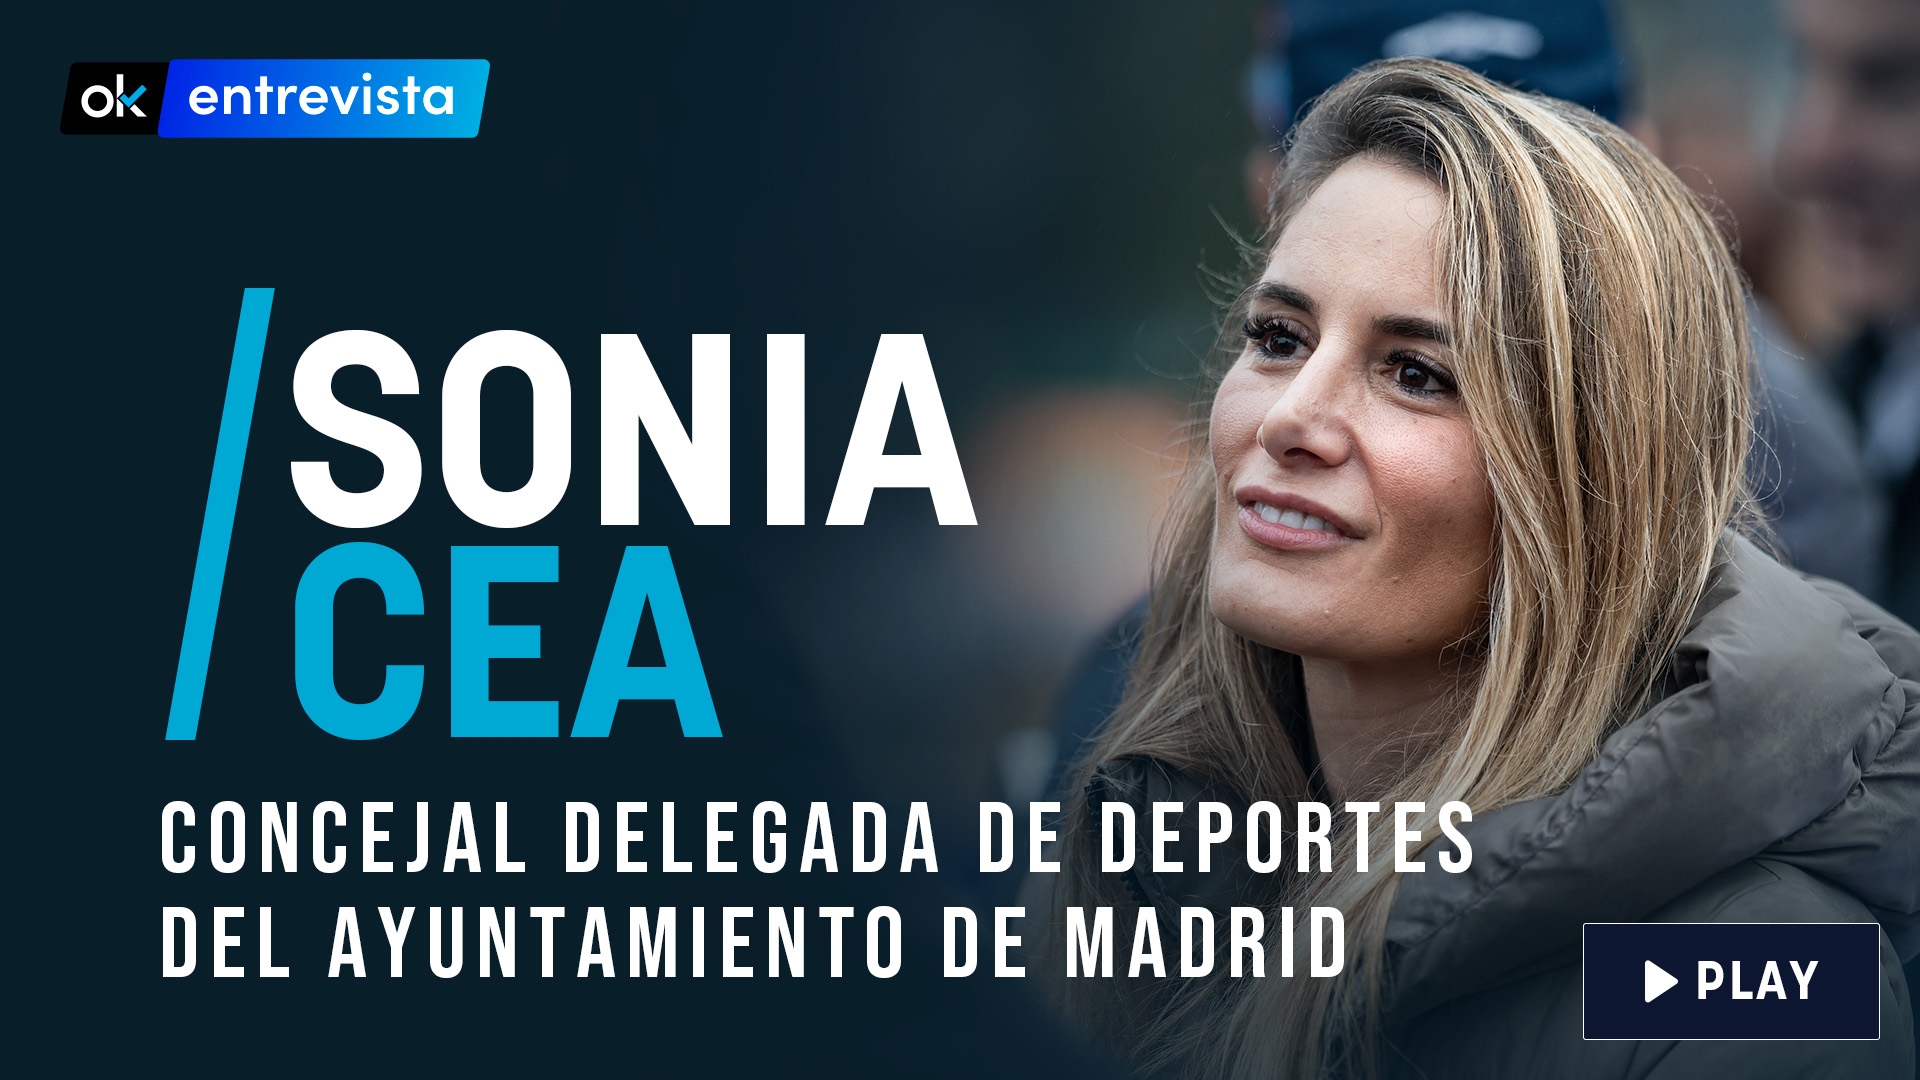 La concejal delegada de deportes del Ayuntamiento de Madrid, Sonia Cea